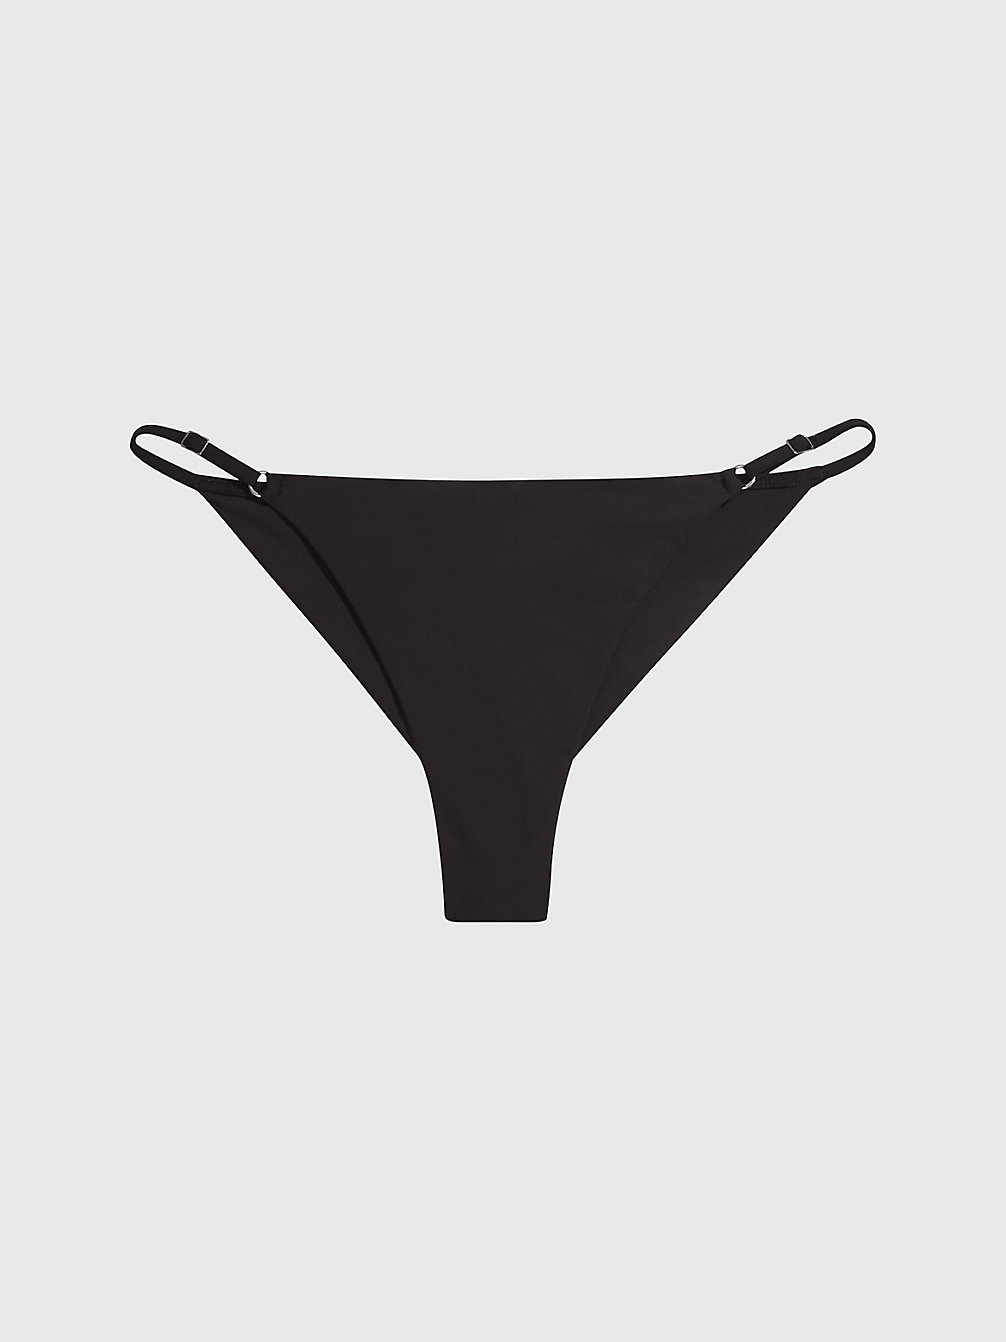 PVH BLACK Bas De Bikini Brésilien - Core Solids undefined femmes Calvin Klein